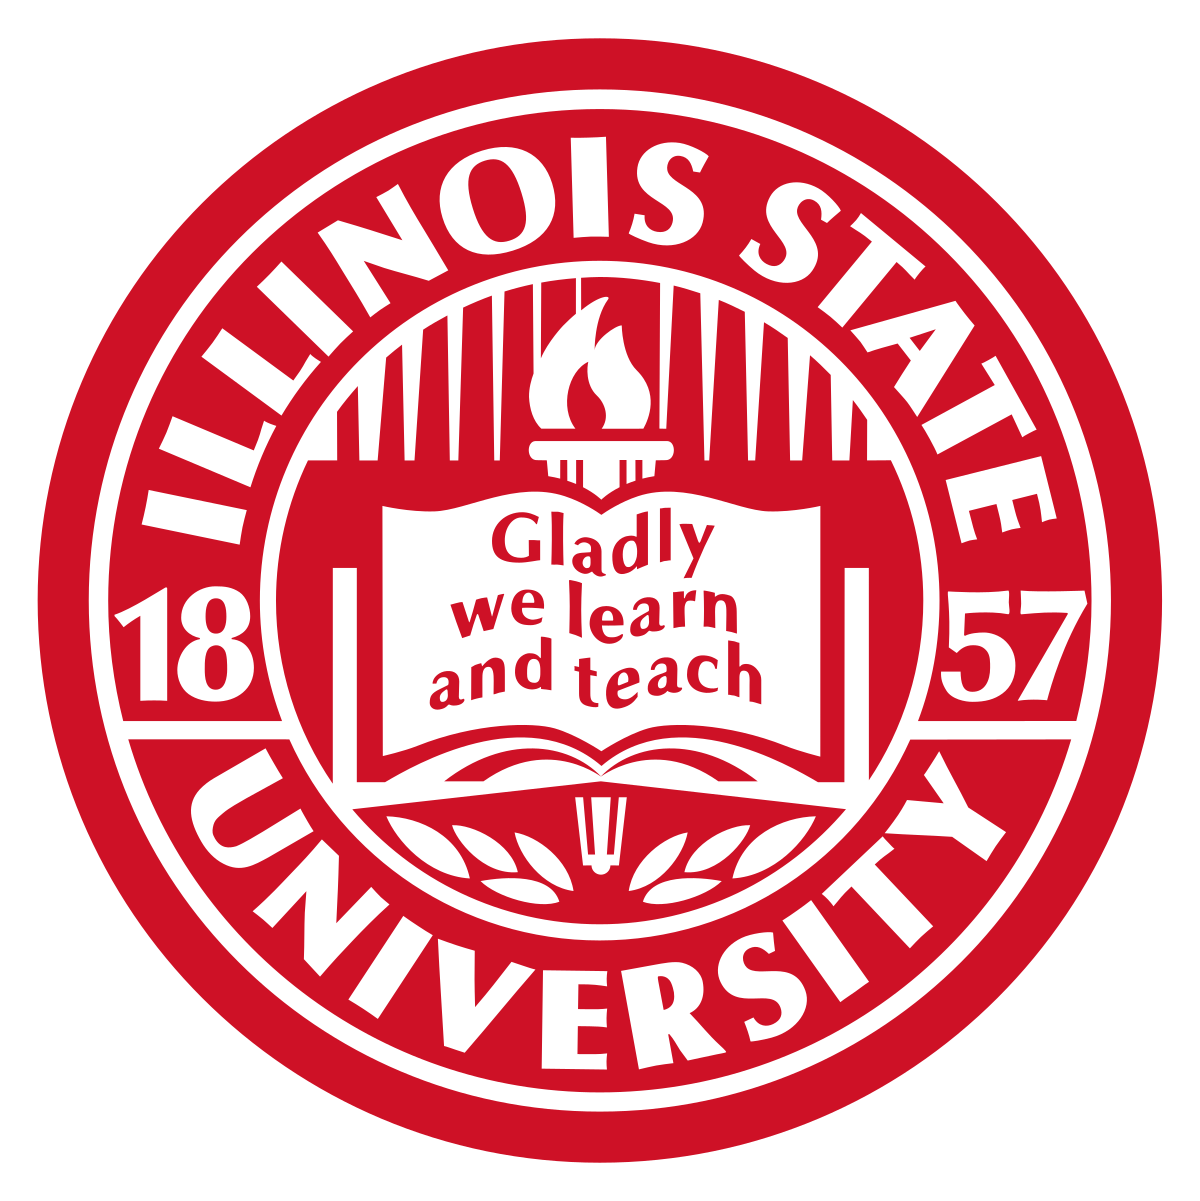 Illinois State University - Wikipedia